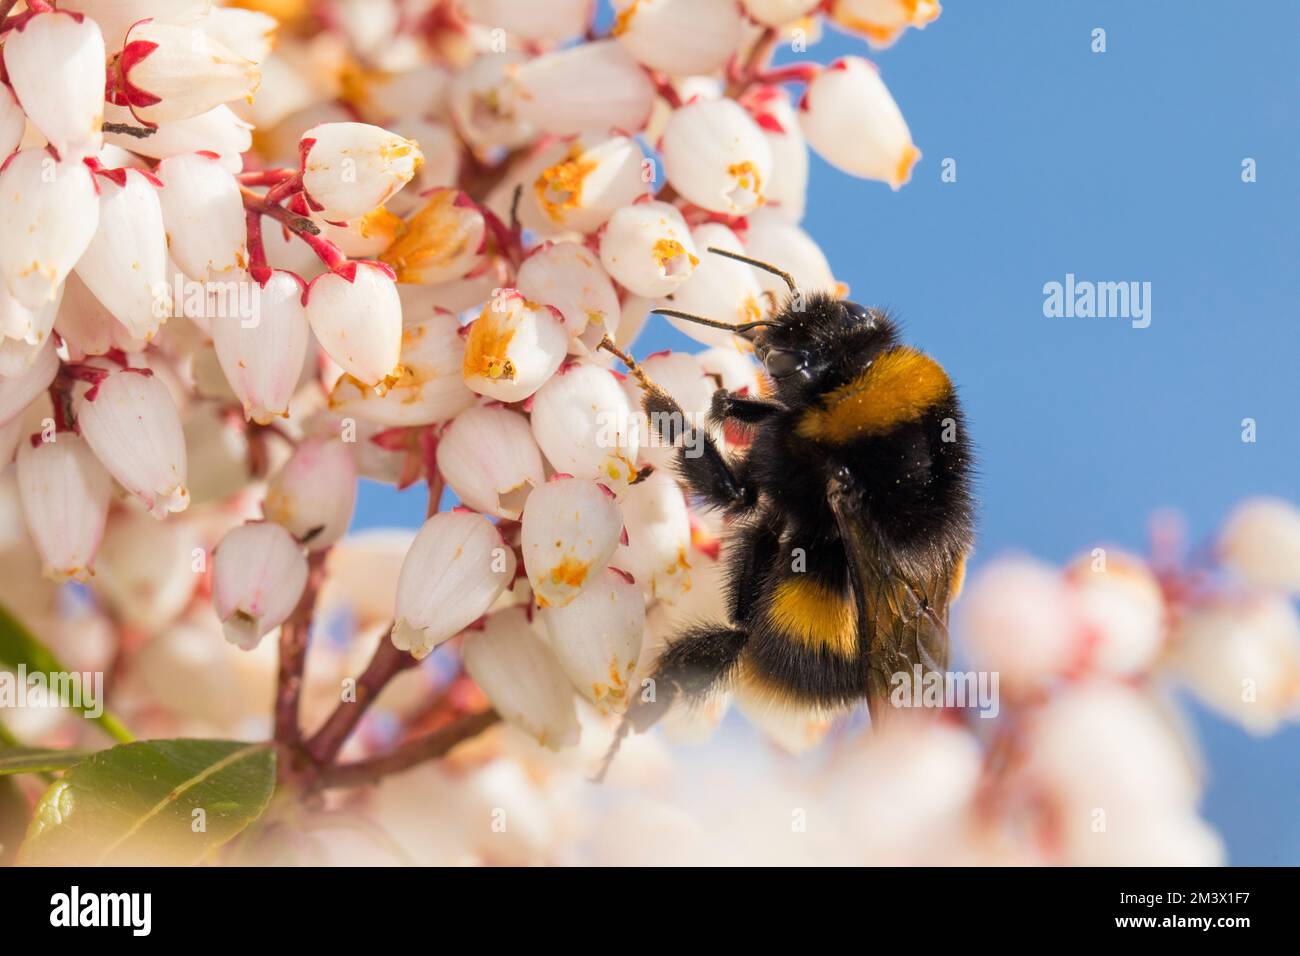 Bumblebee (Bombus terrestris) adulte queen se nourrissant de fleurs de Pieris japonica dans un jardin au printemps. Powys, pays de Galles. Mars. Banque D'Images